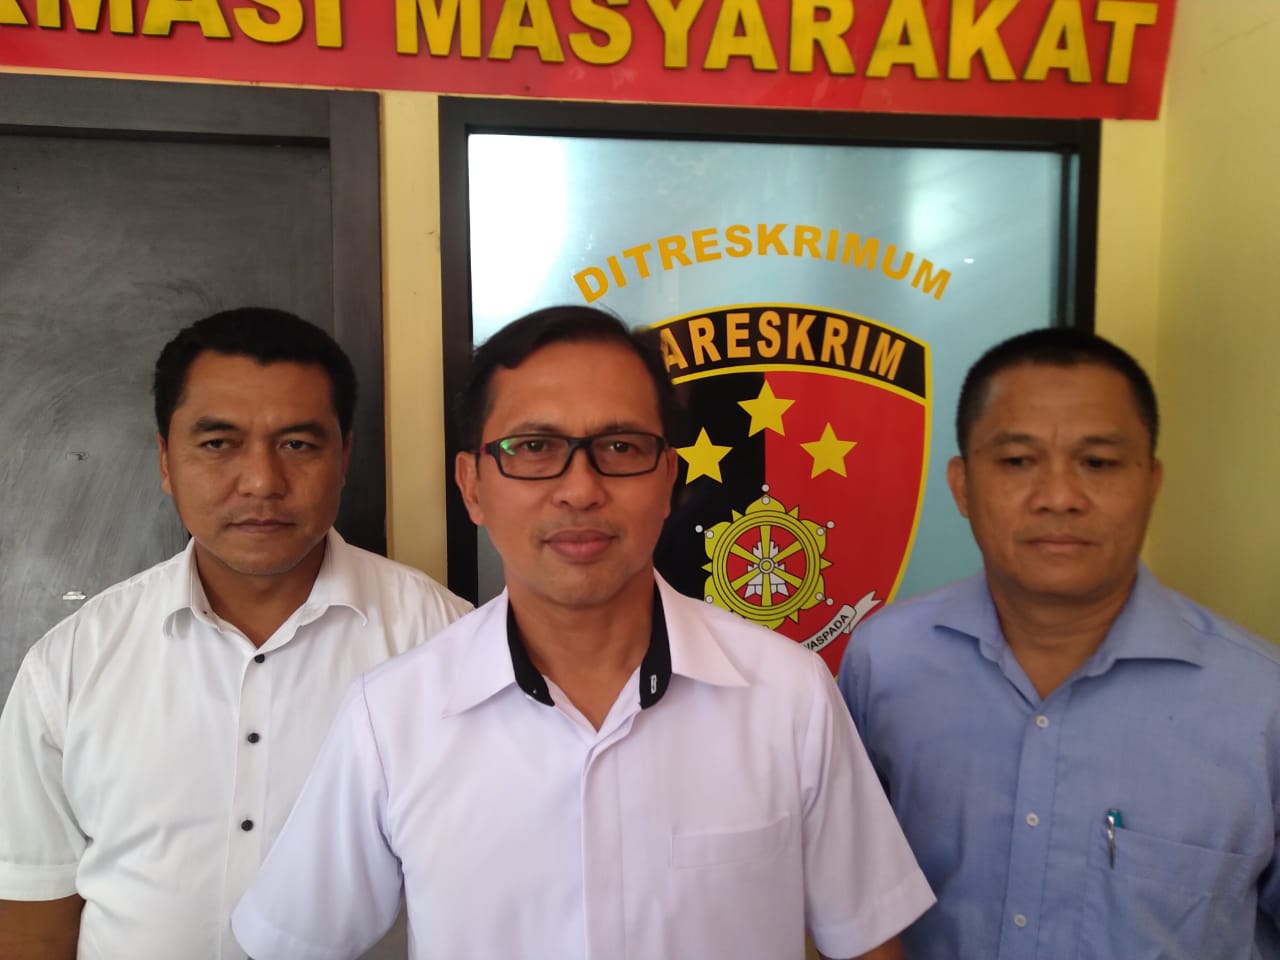 Panitia Diksar UKM Cakrawala Terancam Jadi Tersangka, Ini Penjelasan Polda Lampung